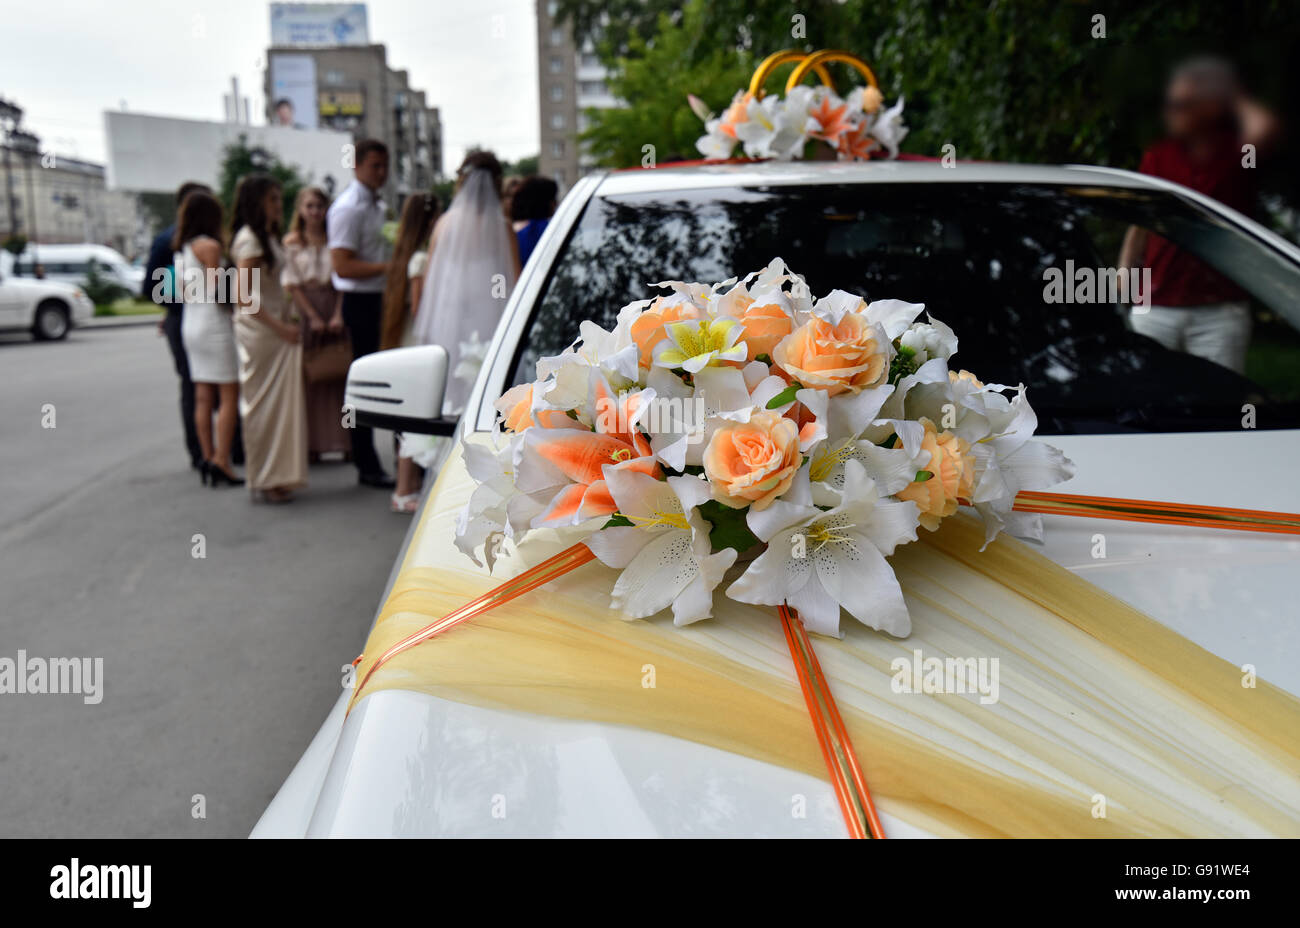 Décoré avec des rubans et des fleurs pour la voiture de mariage Photo Stock  - Alamy